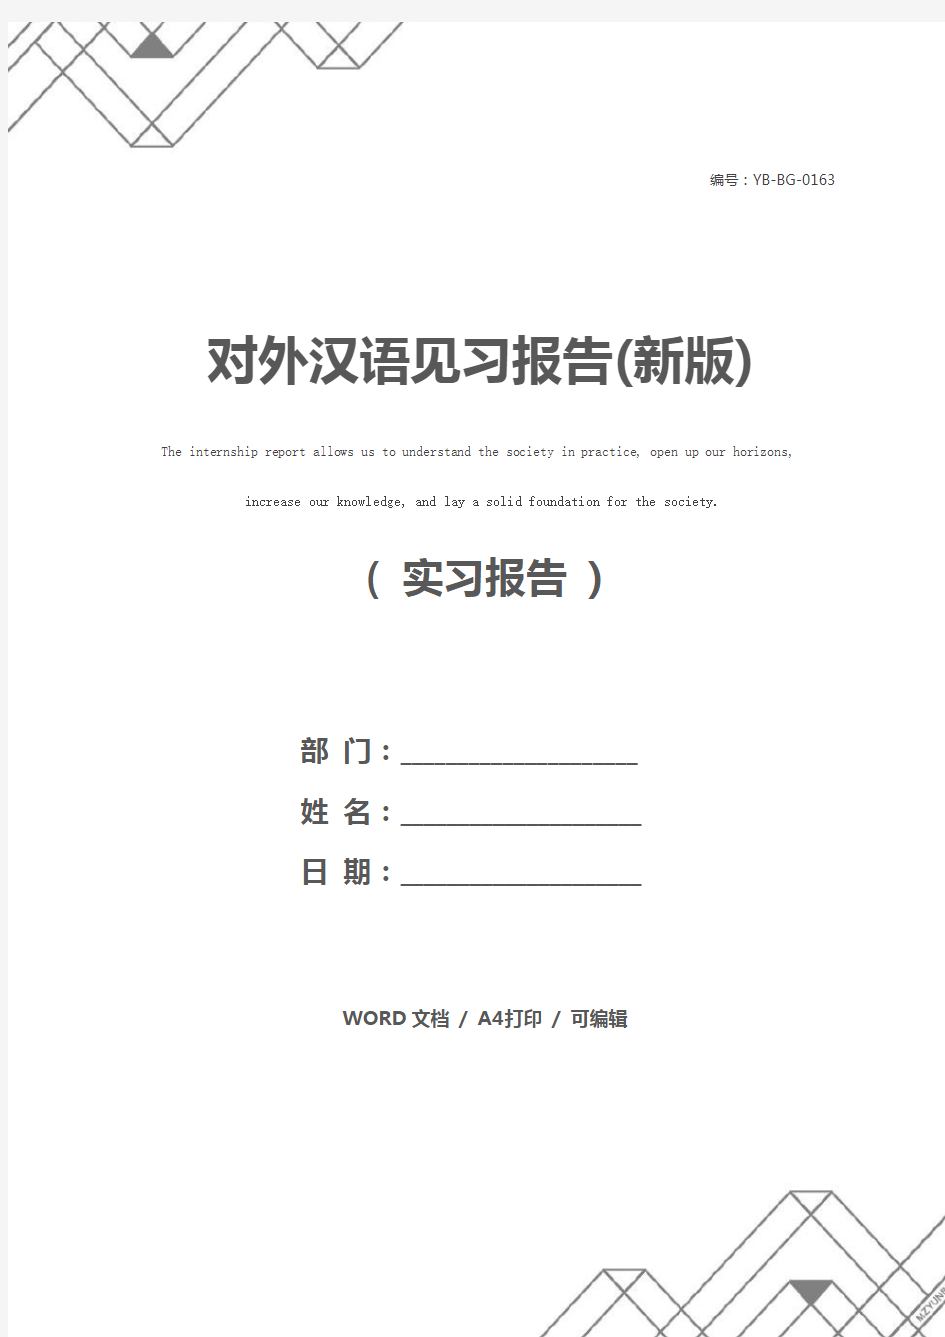 对外汉语见习报告(新版)